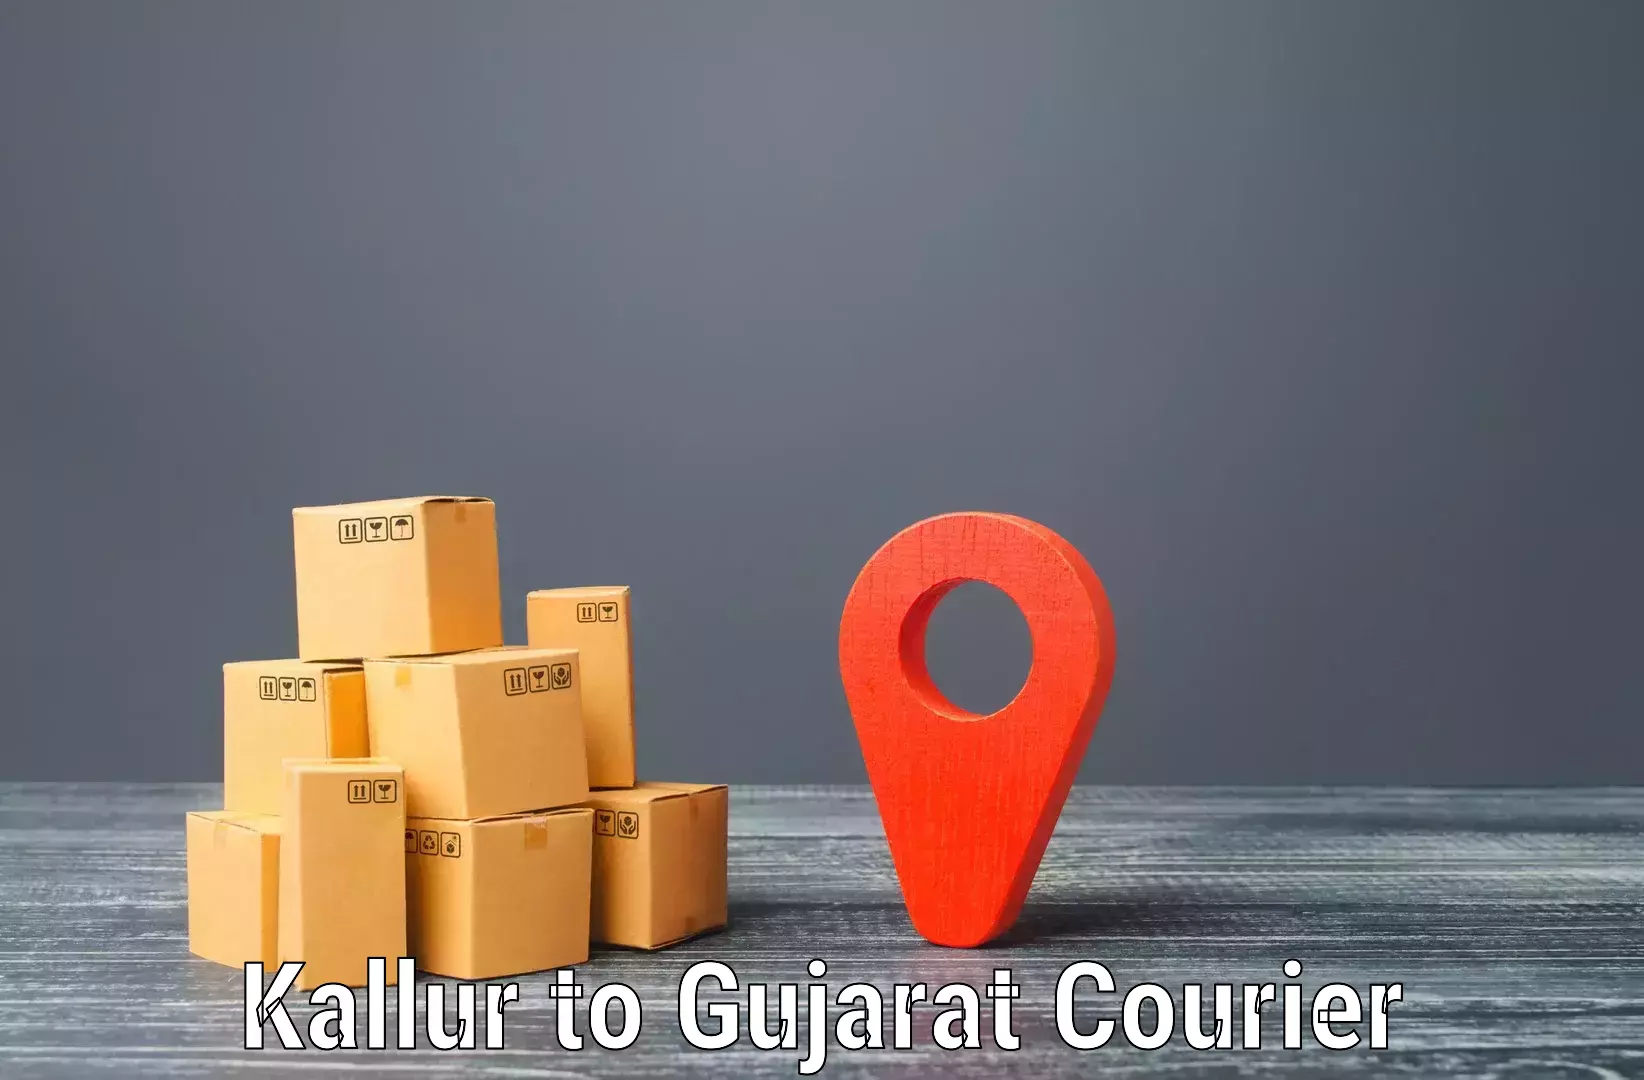 Global shipping networks Kallur to Kadodara